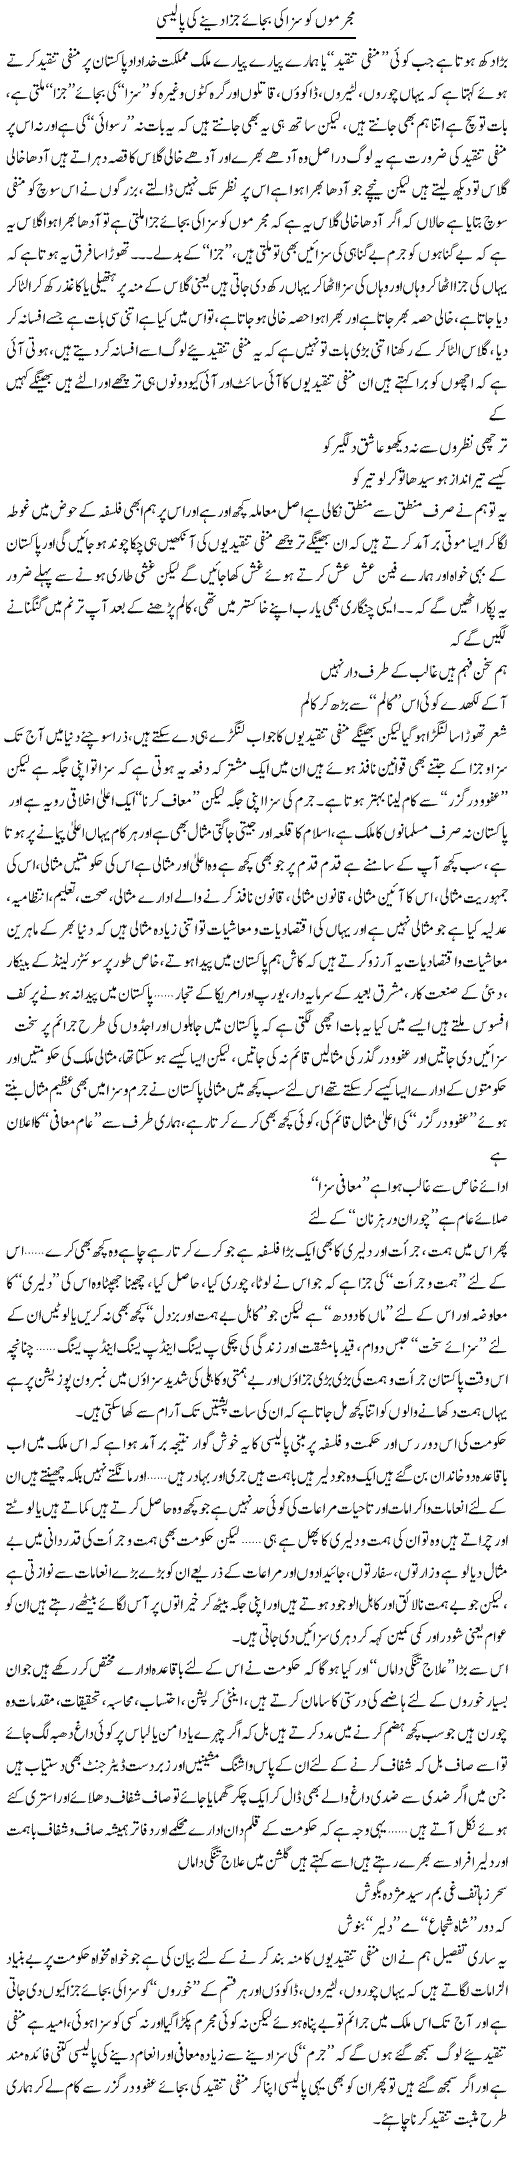 Mujrimon Ko Saza Ki Bajae Jaza Dene Ki Policy | Saad Ullah Jan Barq | Daily Urdu Columns